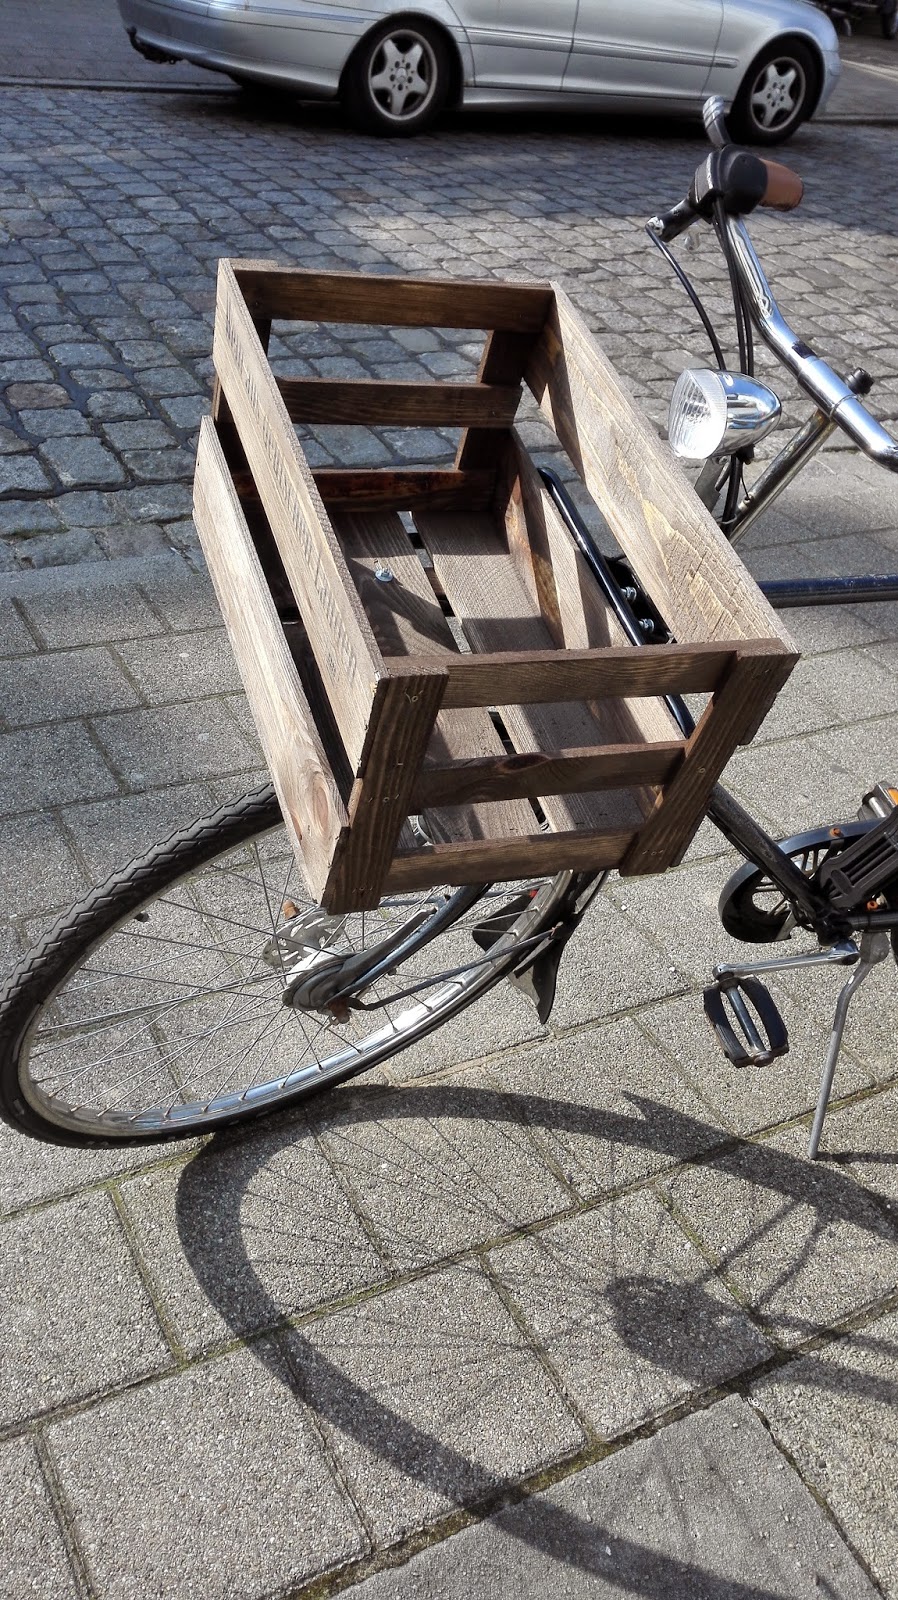 Fahrradkorb befestigen - so geht's